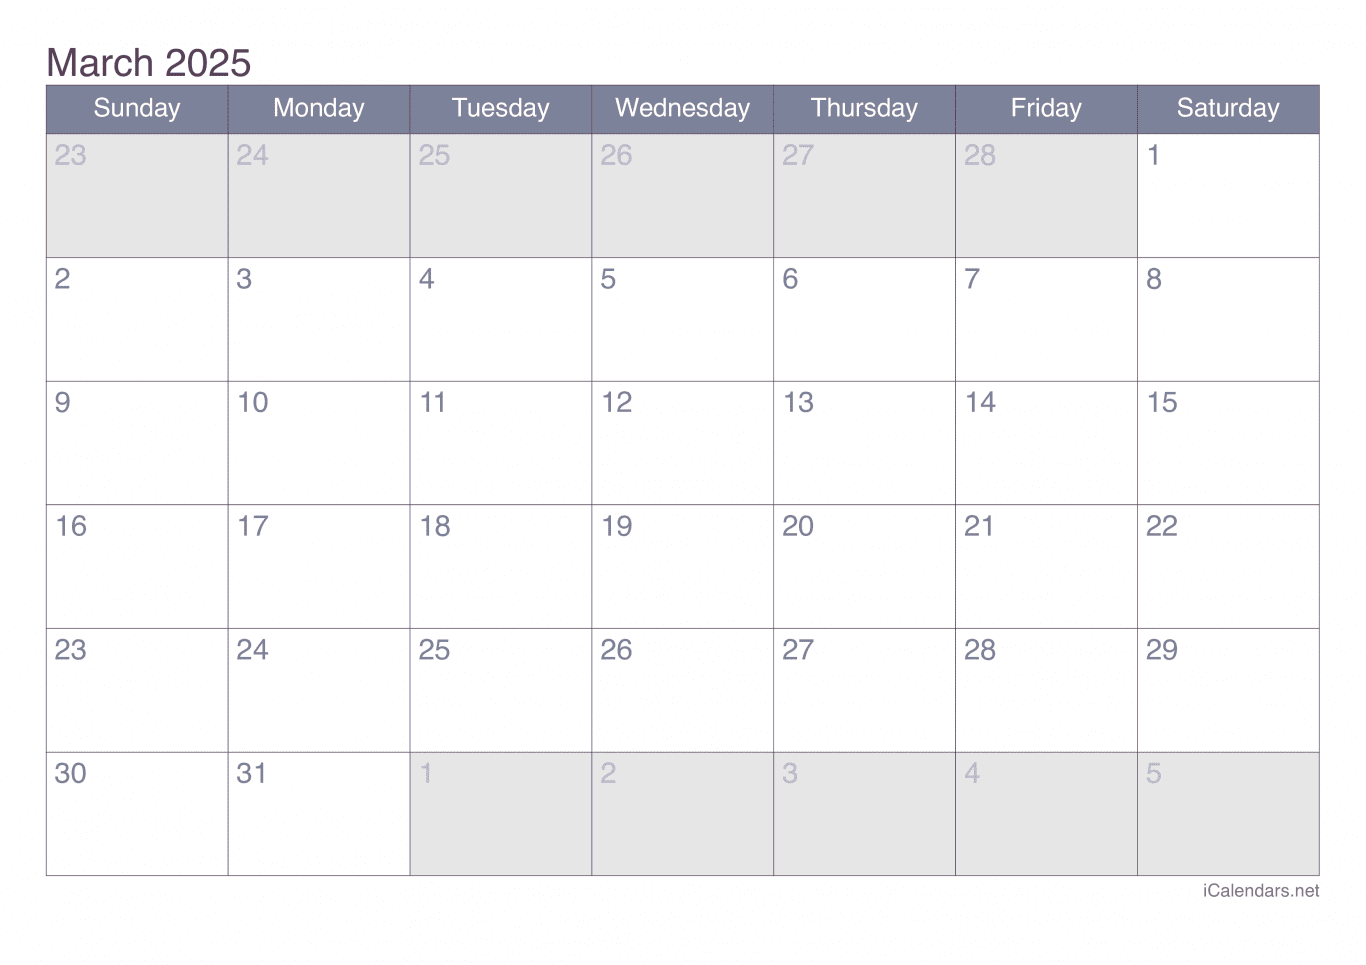 2025 March Calendar - Office